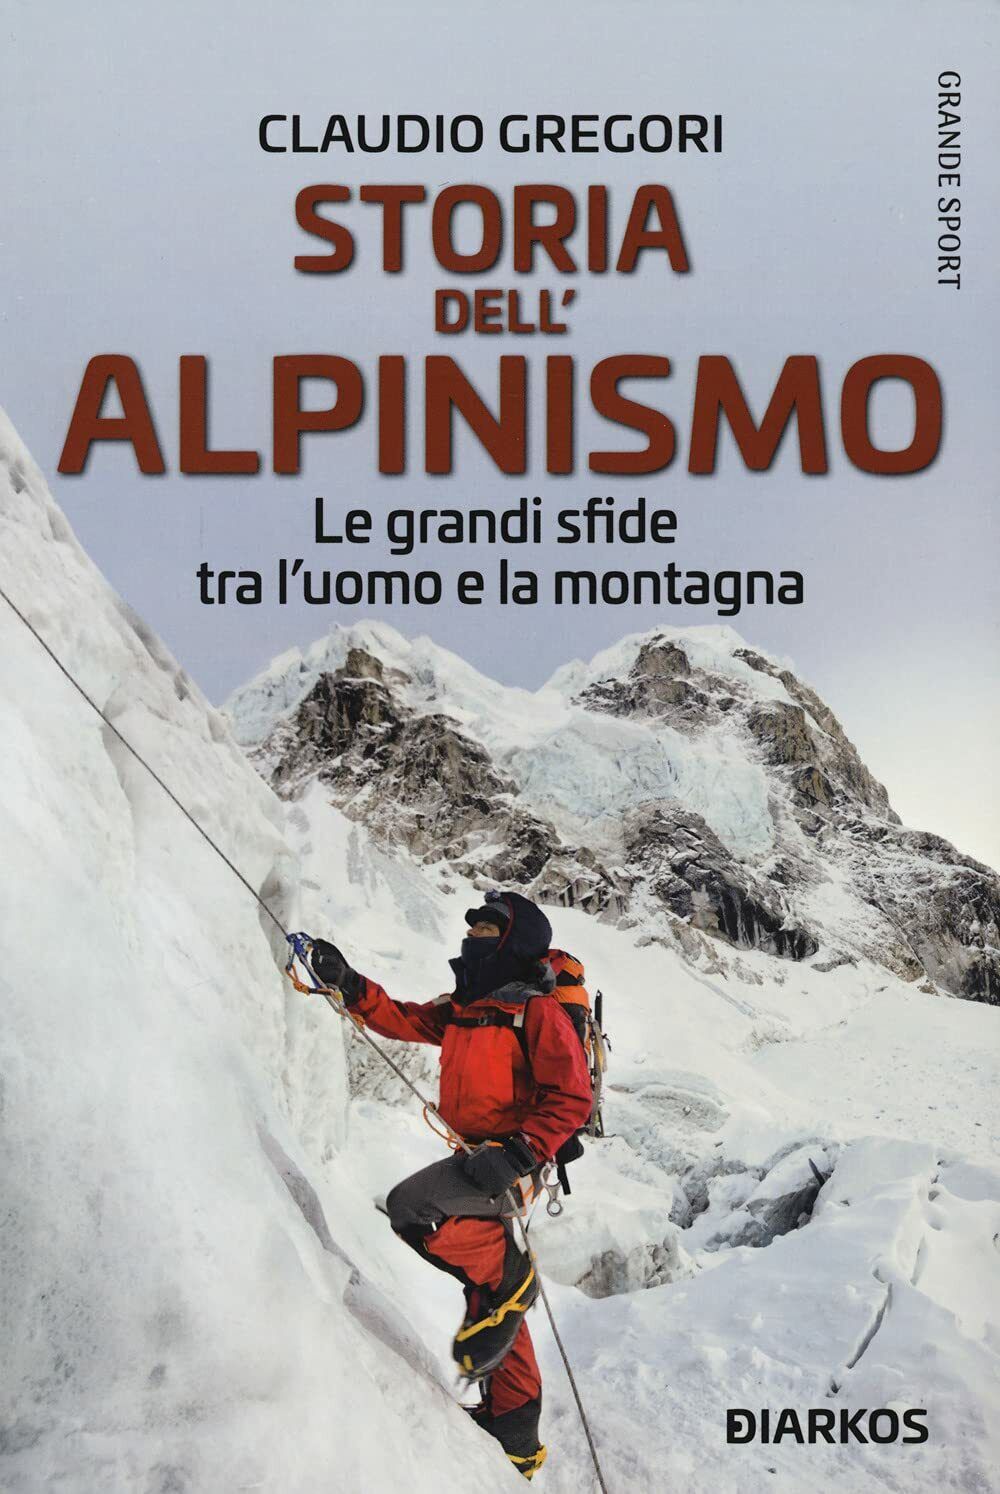 Storia dell'alpinismo - Claudio Gregori - DIARKOS, 2021